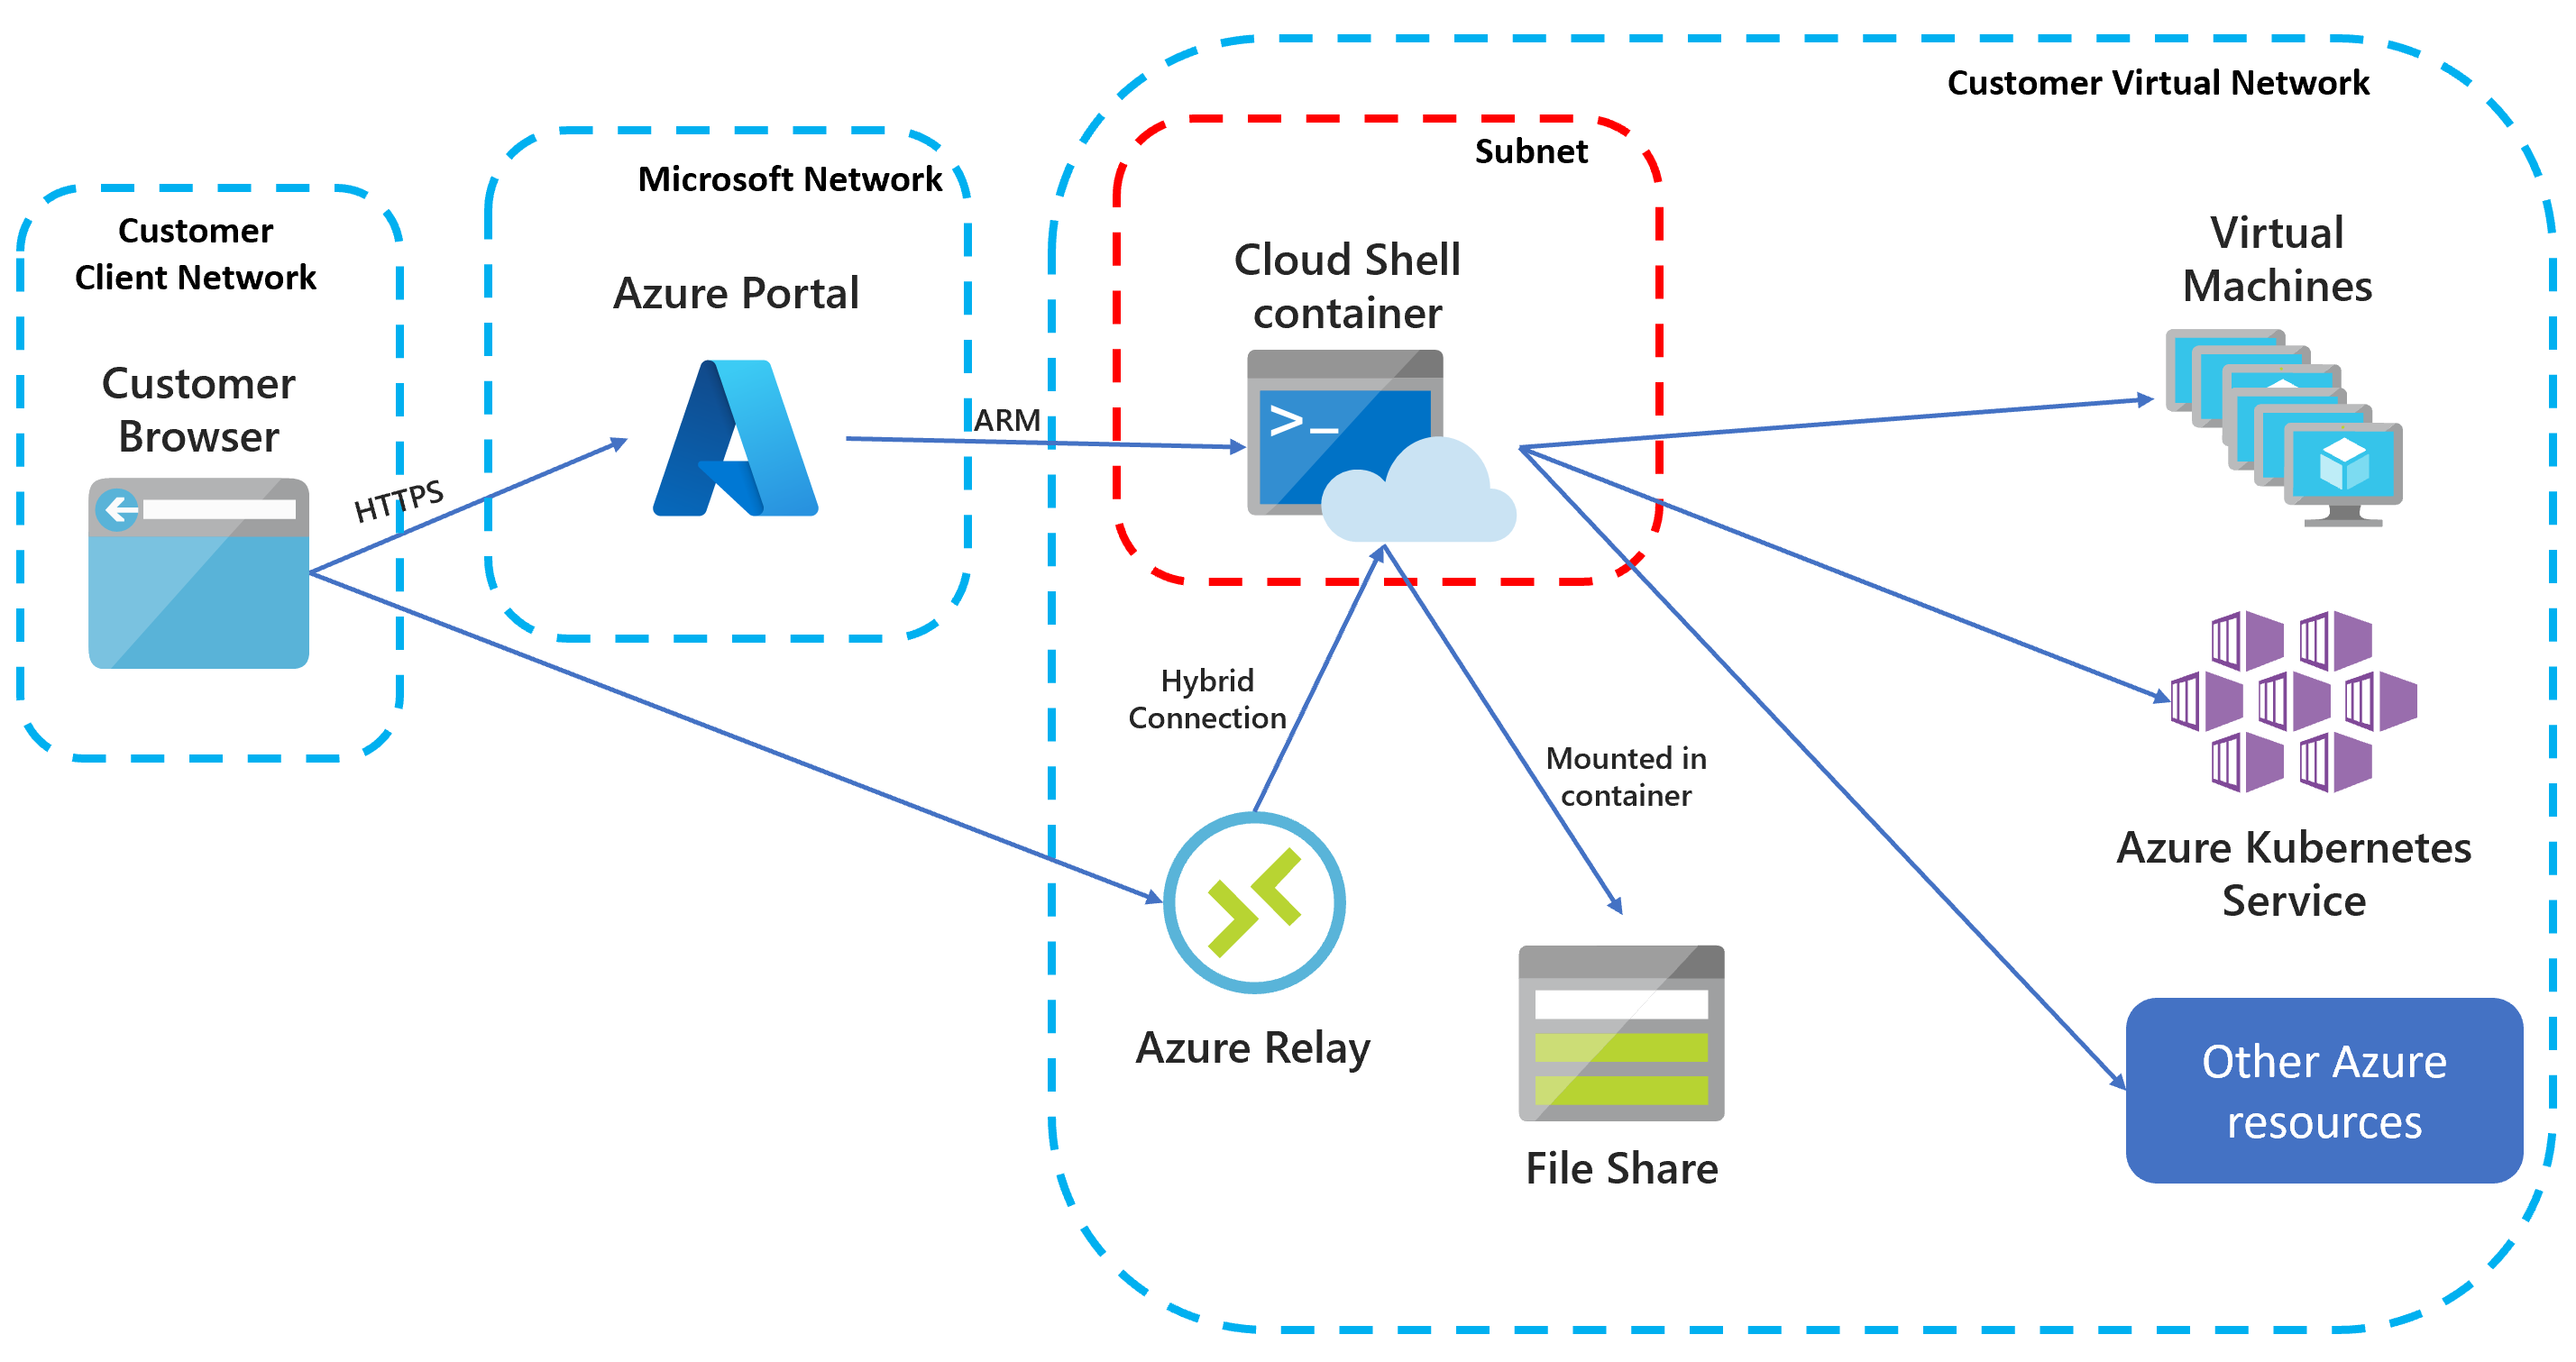 Ilustracja przedstawiająca architekturę sieci wirtualnej izolowanej w usłudze Cloud Shell.